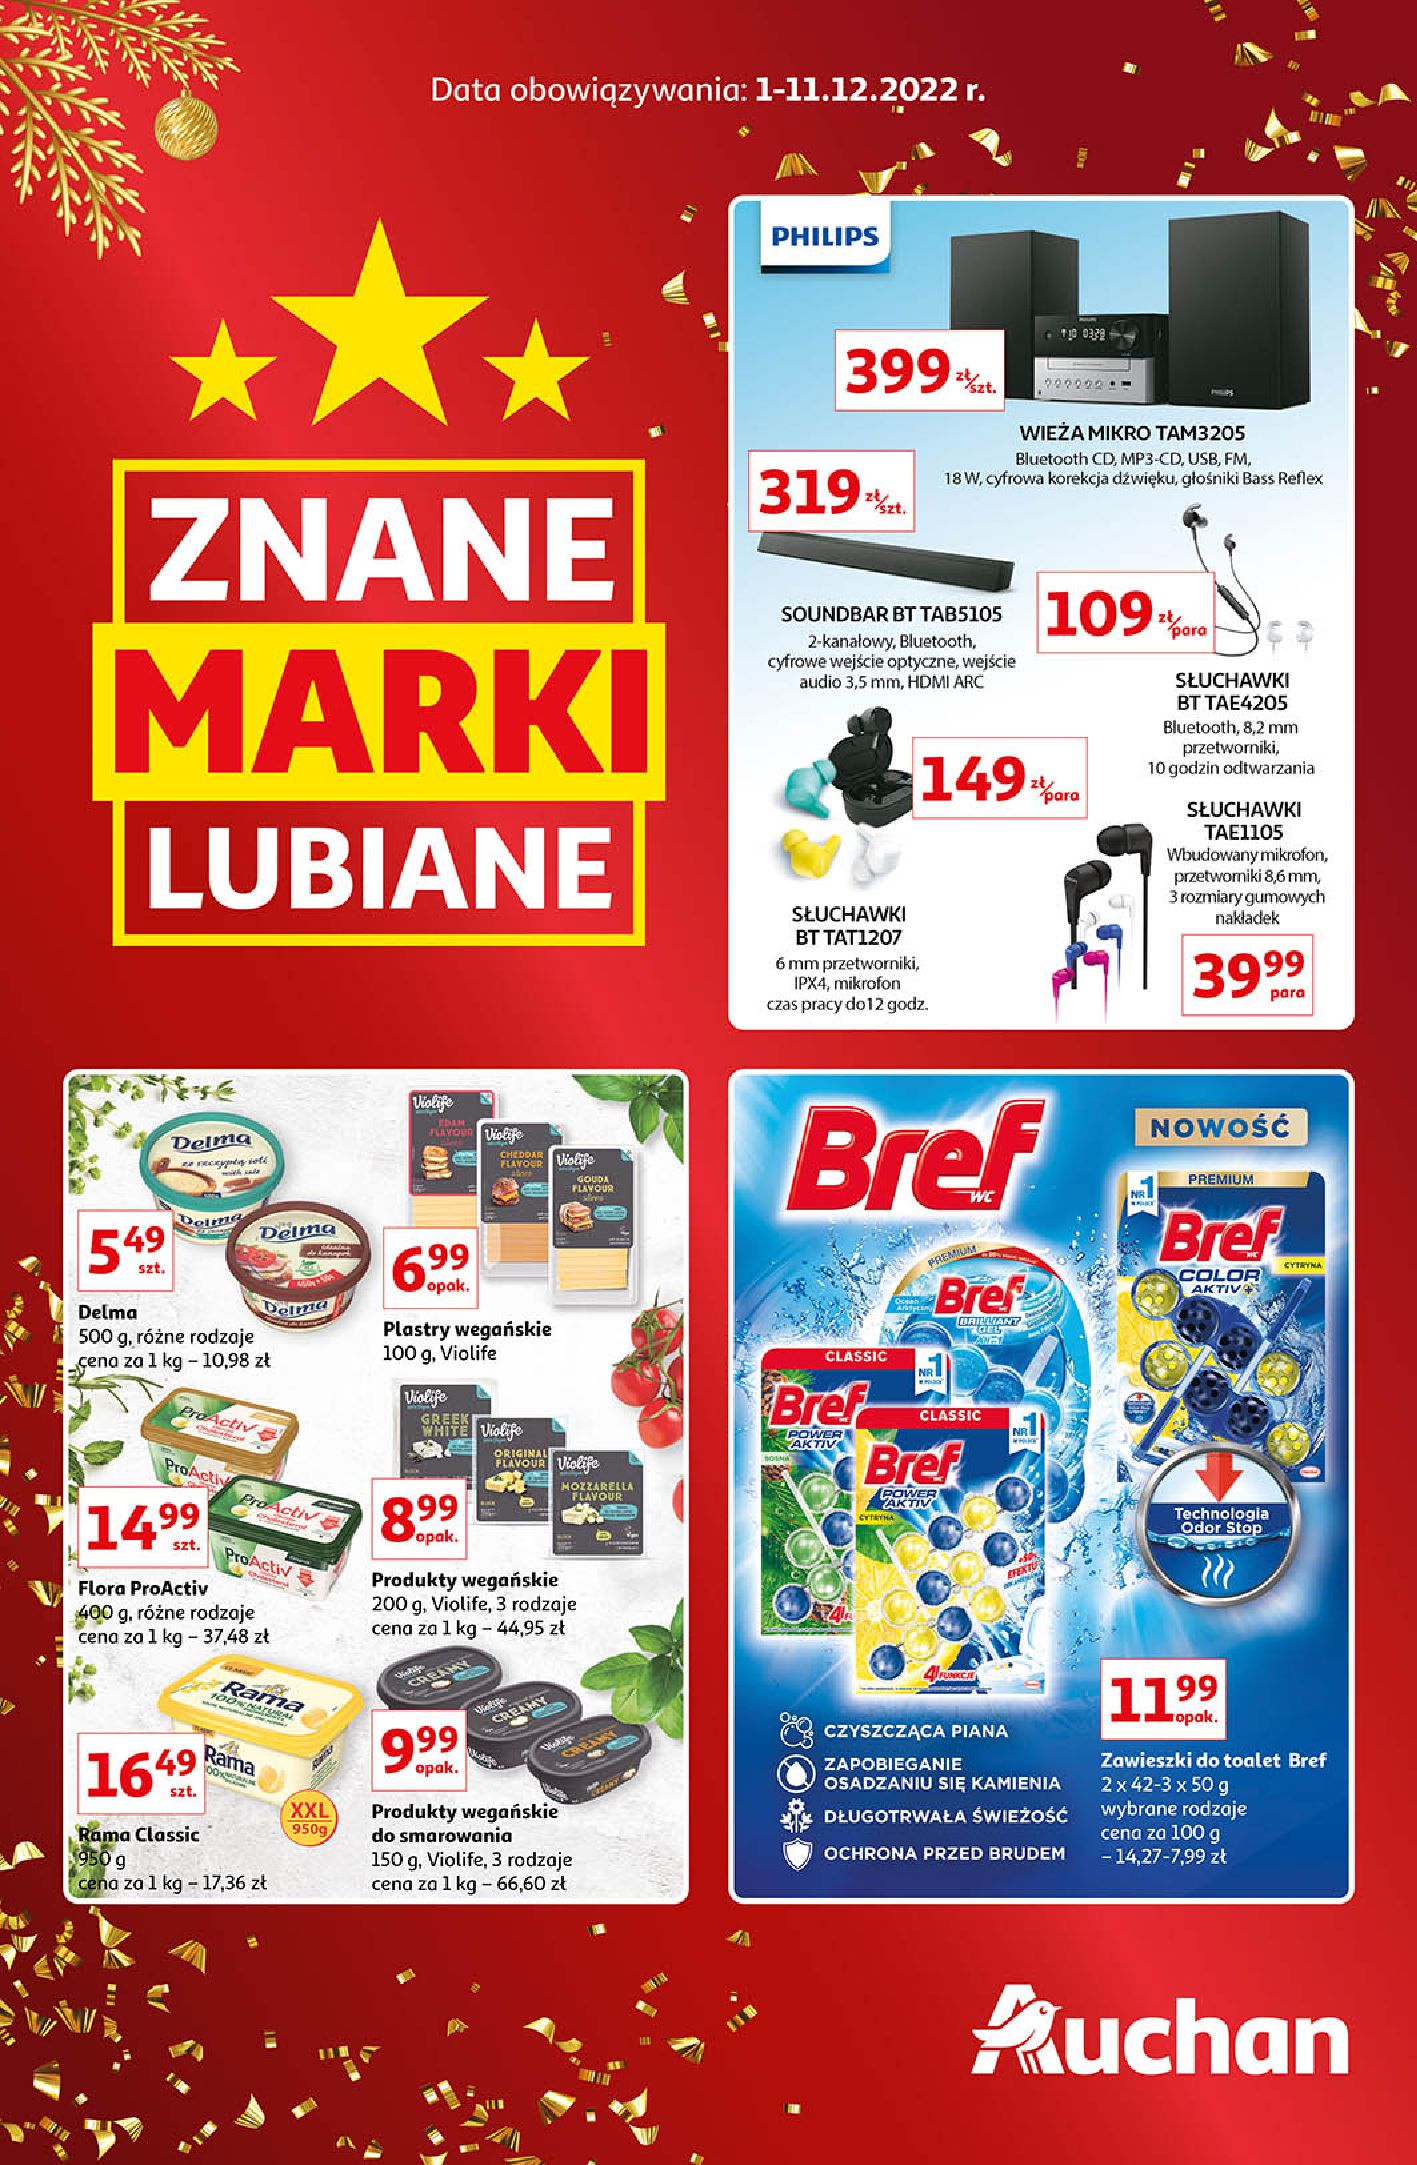 Auchan:  Gazetka Auchan - Znane marki  30.11.2022